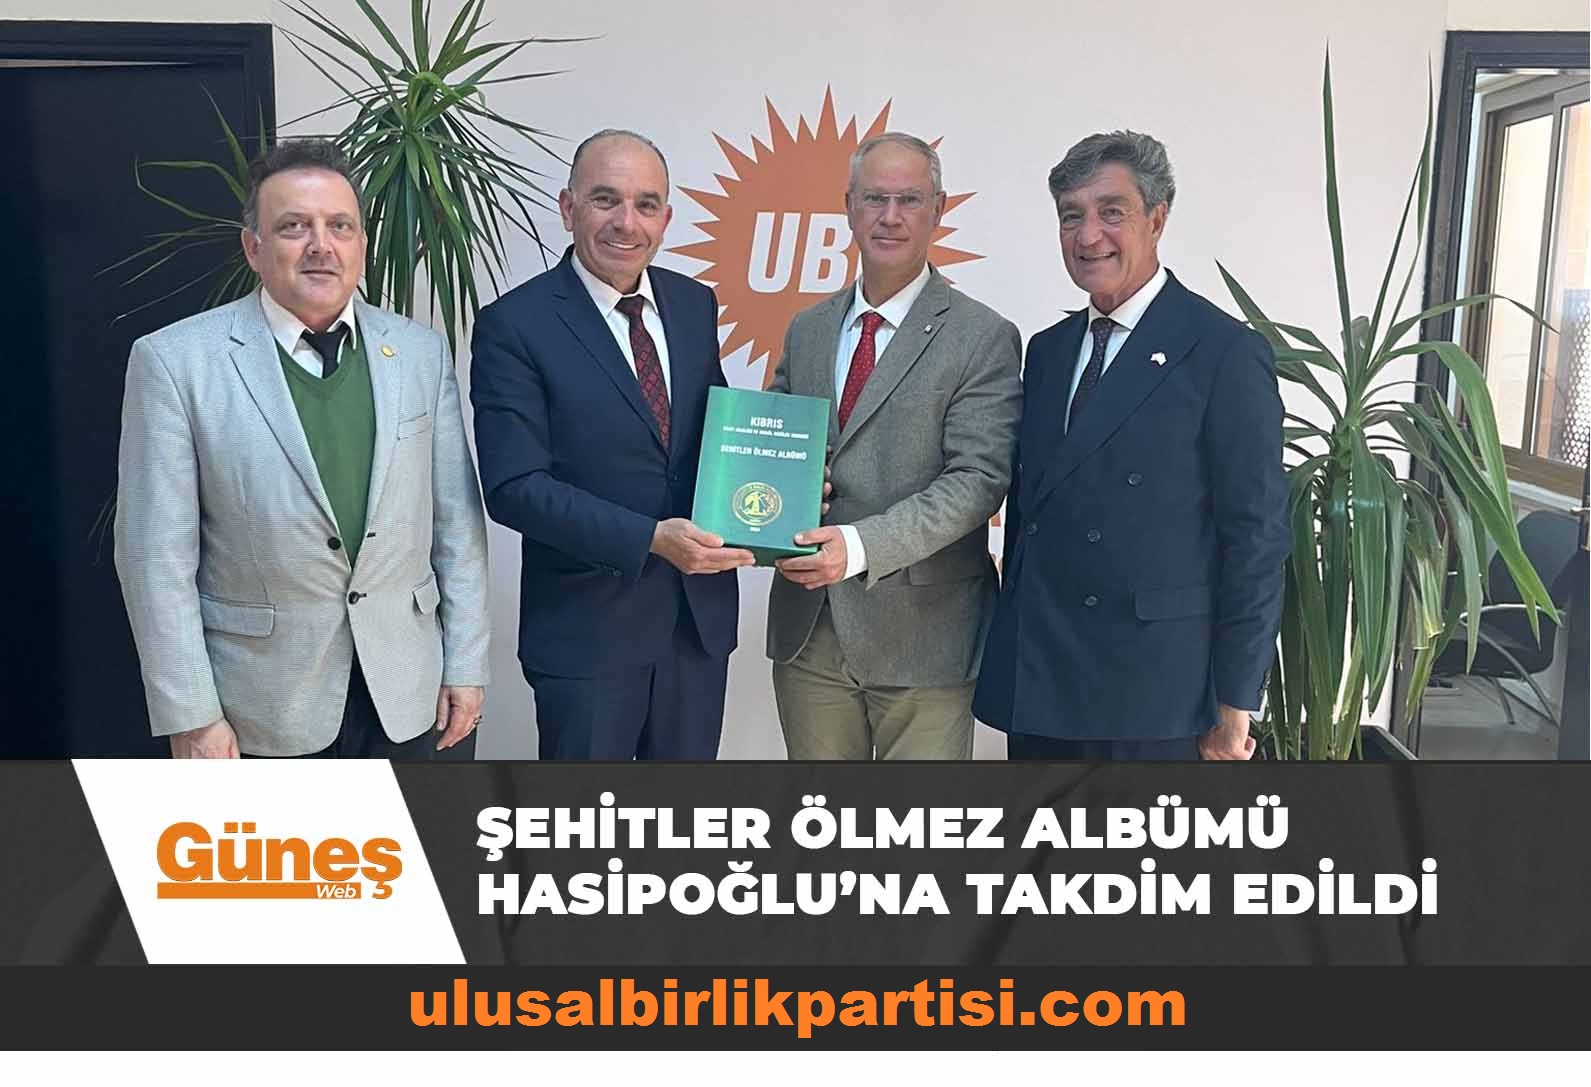 Read more about the article Şehitler Ölmez Albümü Hasipoğlu’na takdim edildi